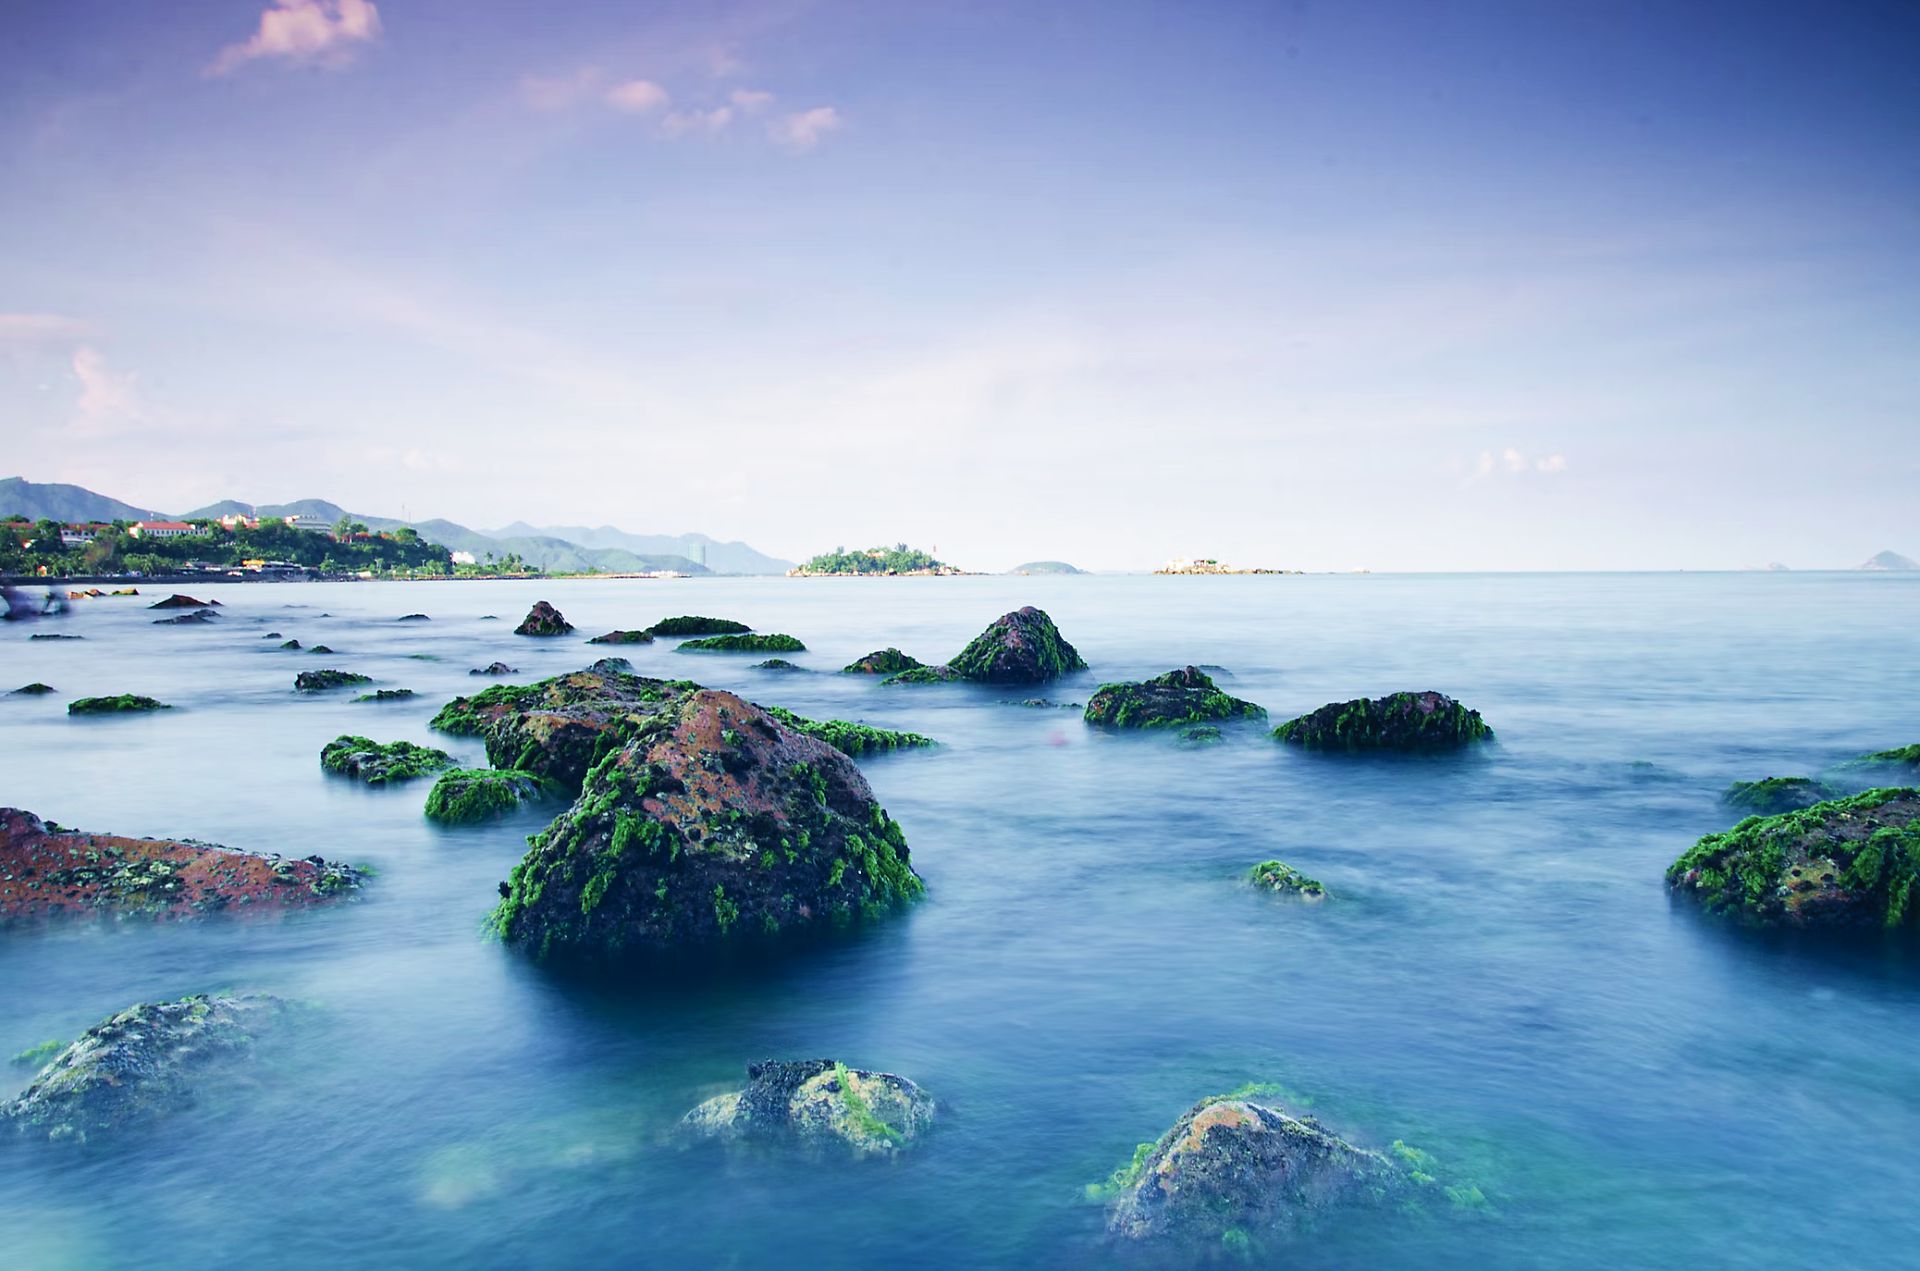 Việt Nam sở hữu 2 trong số 5 bãi biển đẹp nhất thế giới, thu hút triệu lượt xem trên TikTok  - Ảnh 8.